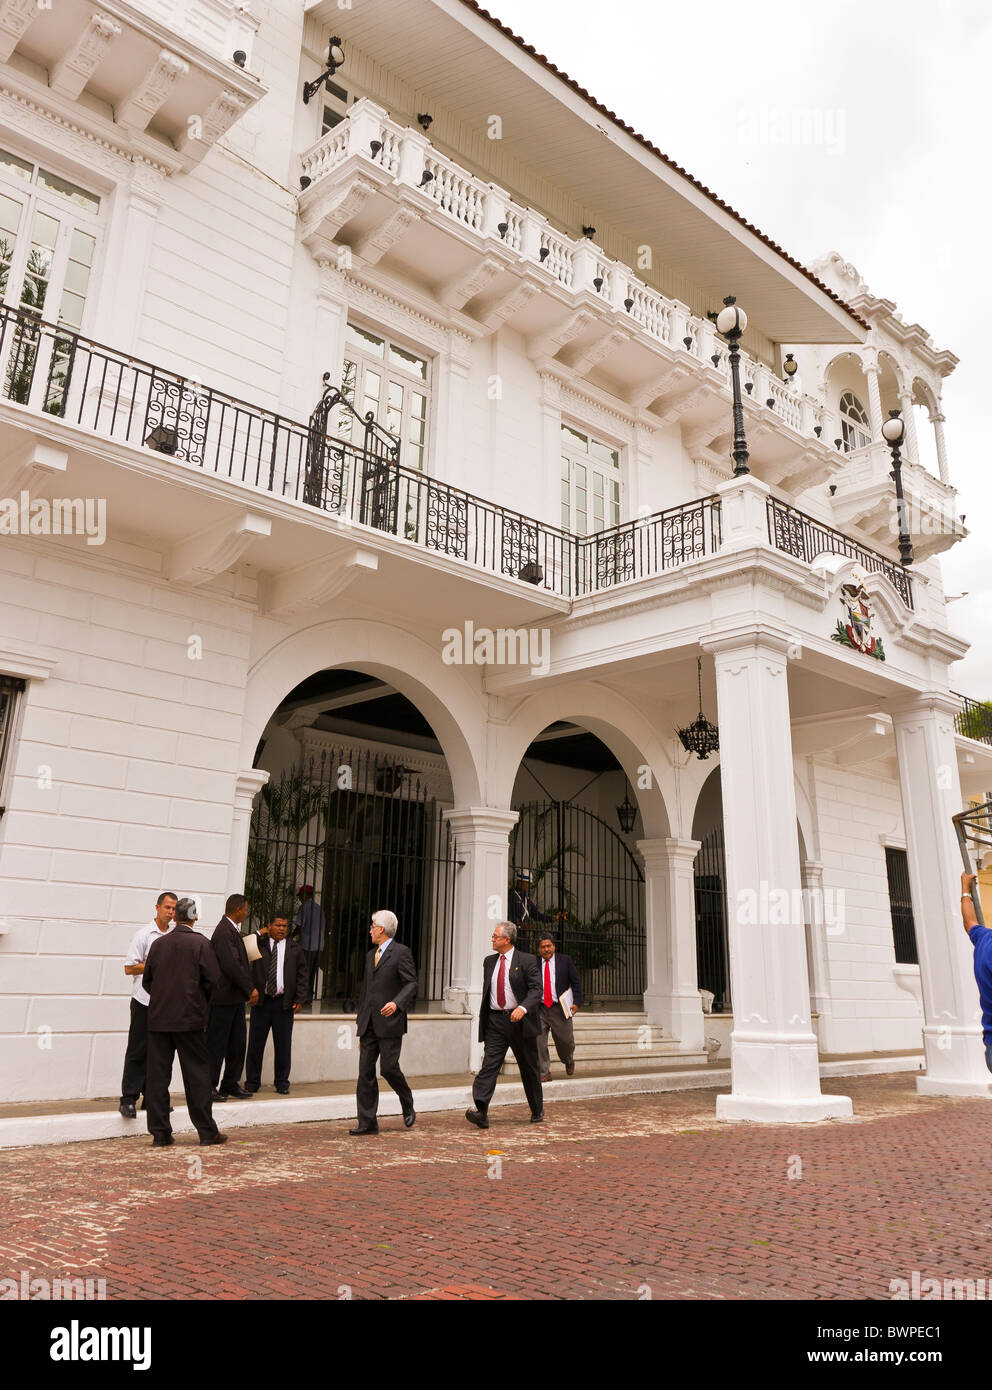 PANAMA CITY, PANAMA - Presidential Palace, Palacio de las Garzas, Casco Viejo, historic city center. Stock Photo